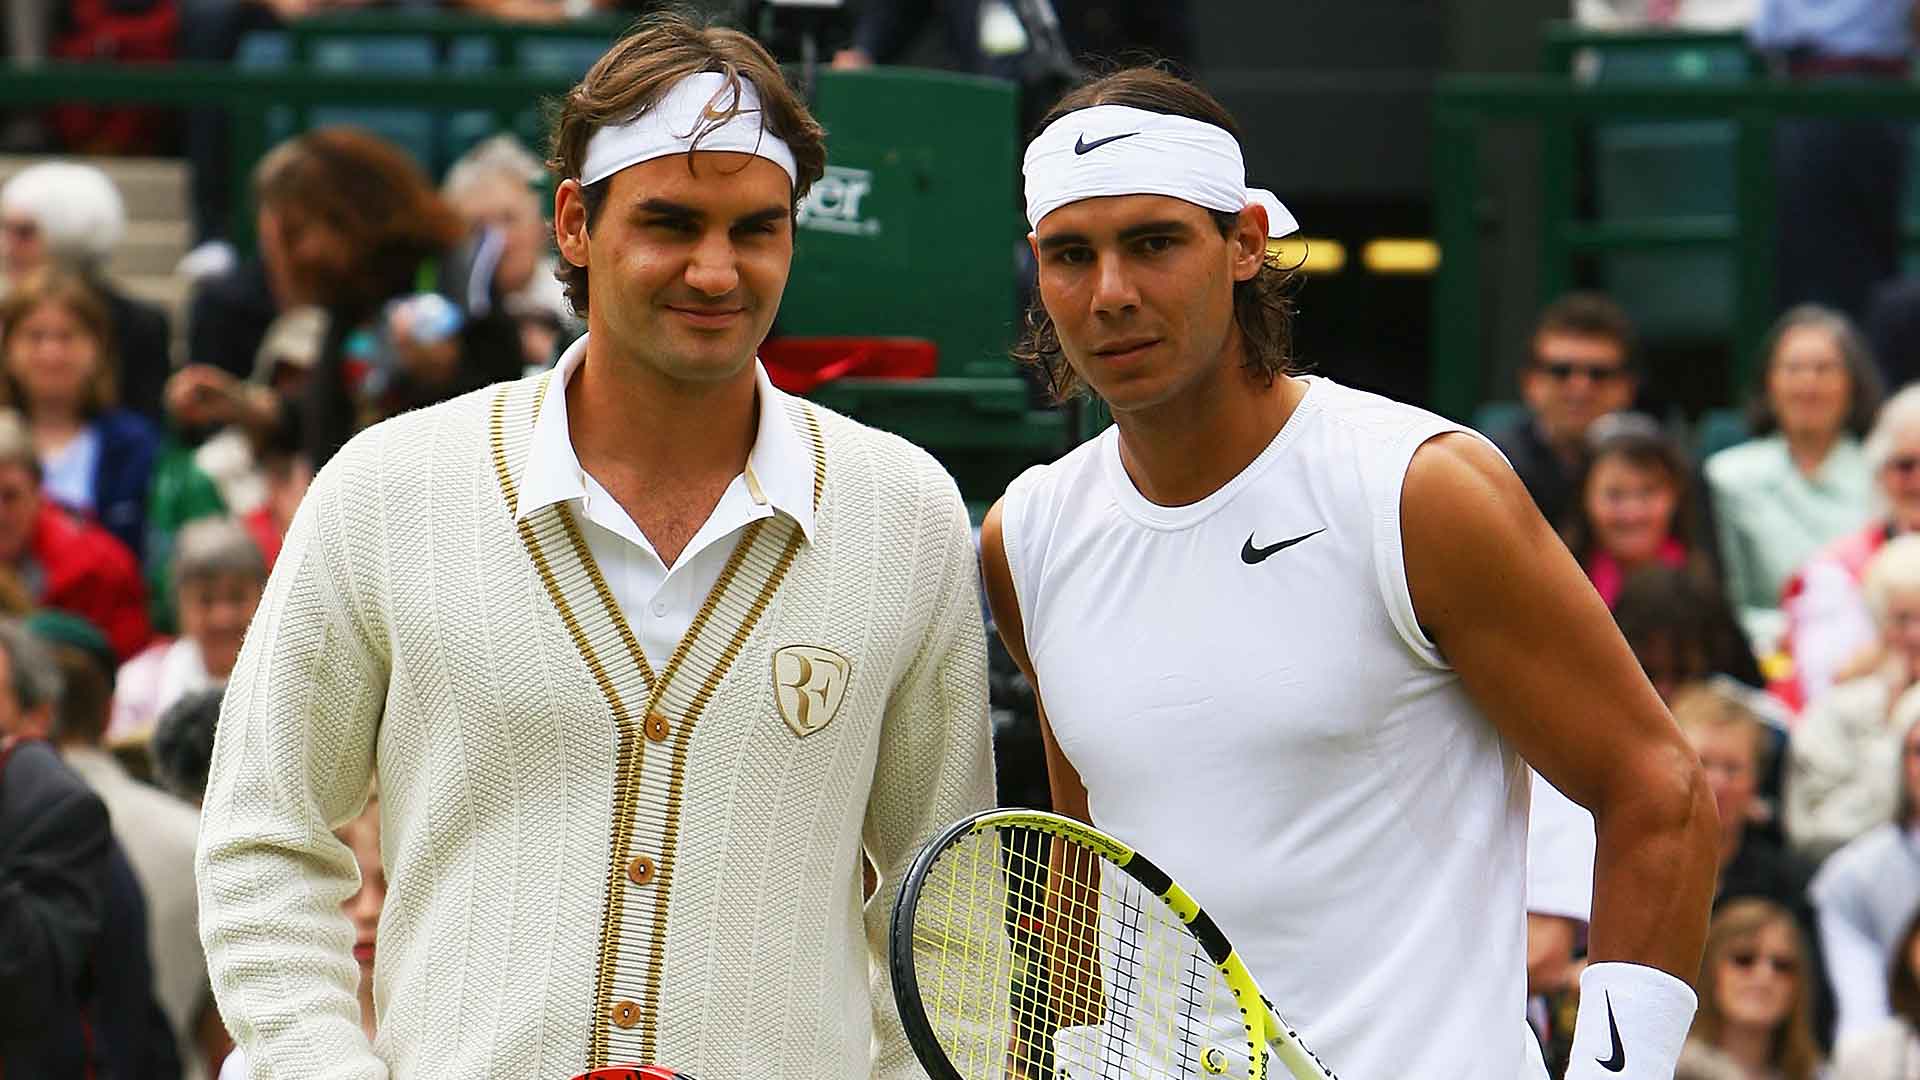 <a href='https://www.atptour.com/en/players/roger-federer/f324/overview'>Roger Federer</a>